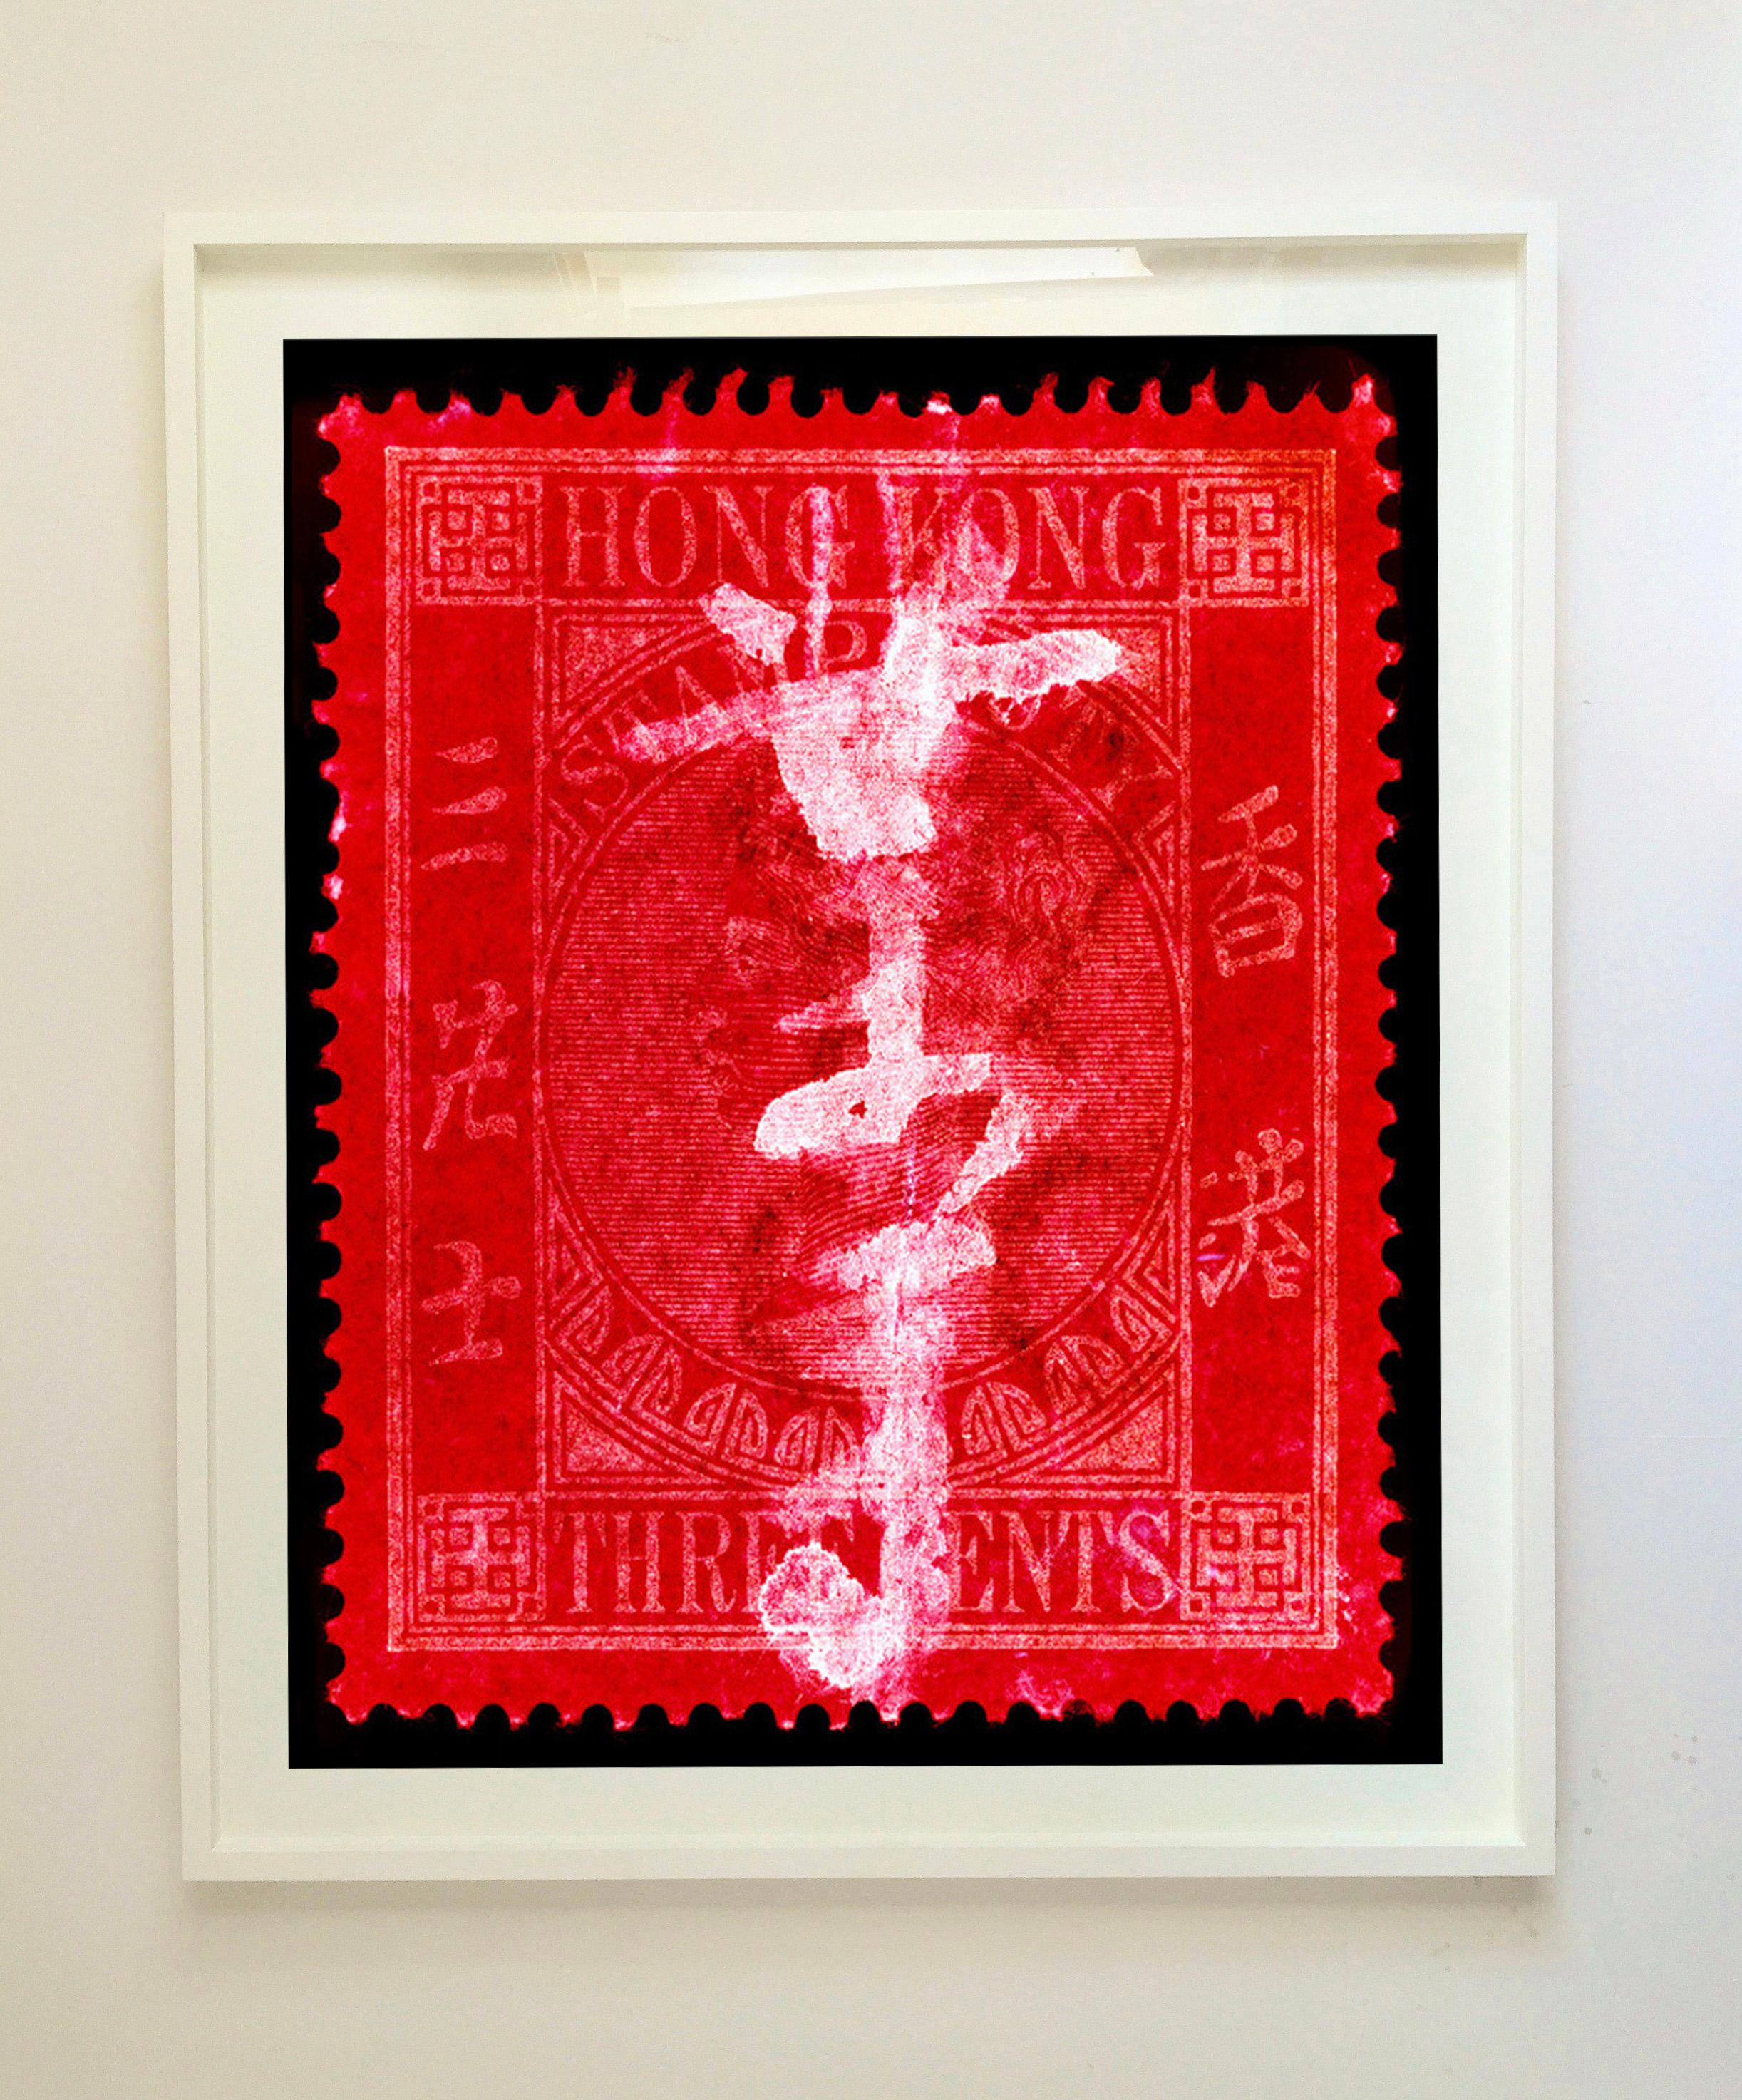 QV 3 Cents, aus der Heidler & Heeps Stamp Collection'S, Hong Kong Series. Der feine, detaillierte Wandteppich der originalen kleinen Briefmarke aus Hongkong wurde durch den Frankiervermerk und das spezielle Dunkelkammerverfahren von Heidler & Heeps